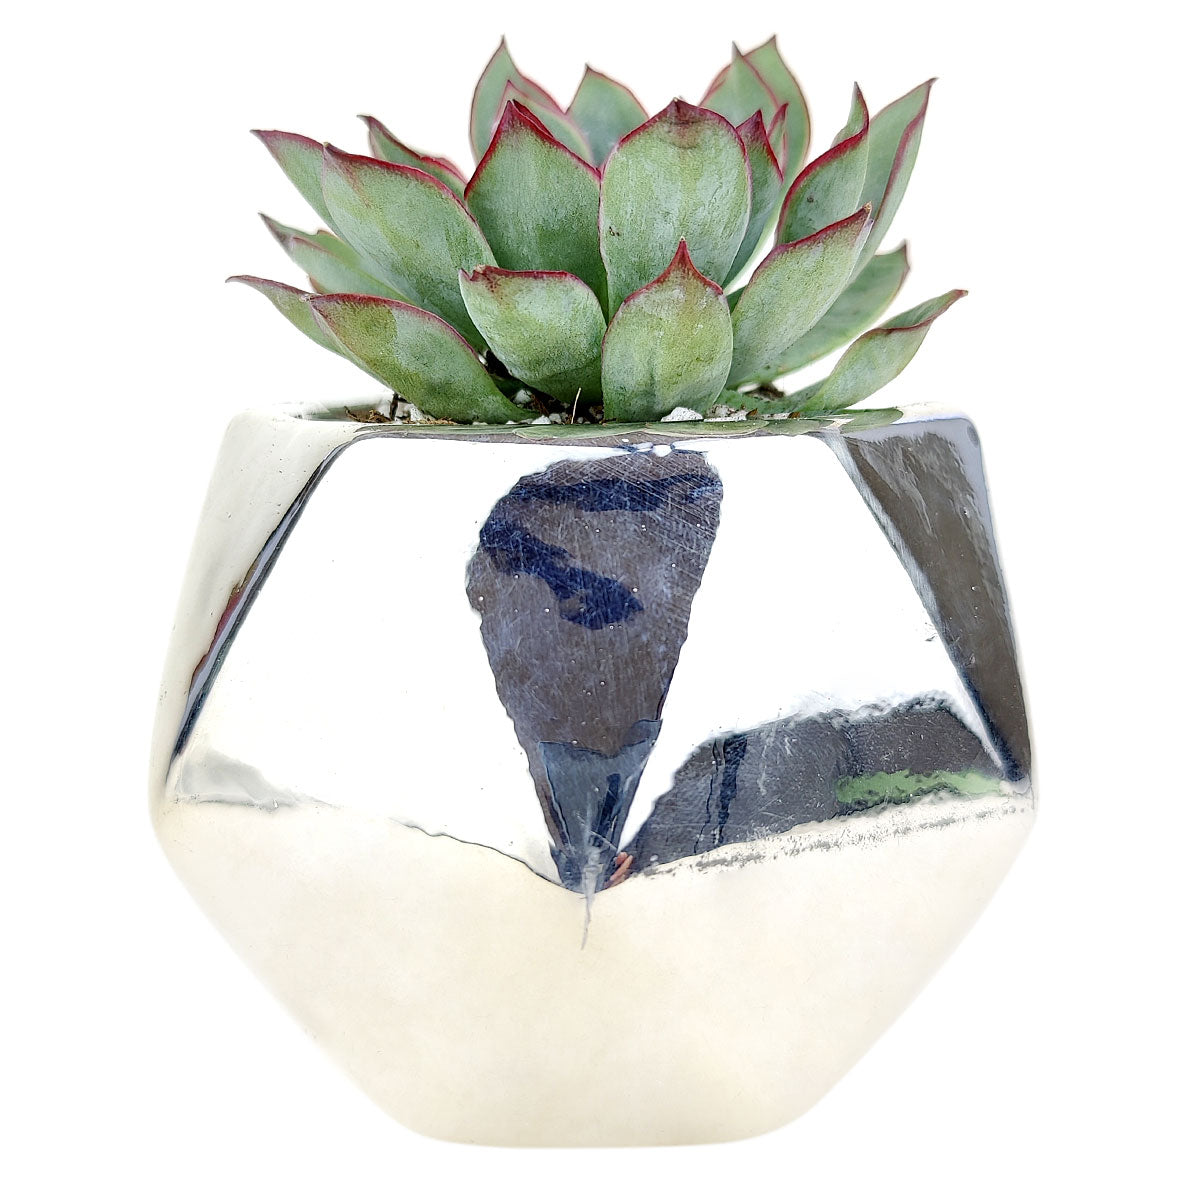 Pot for sale, Mini pot for succulent, Succulent pot decor ideas, Gold Hexagon Pot, Flower pot for sale, glass pots for planting, succulent gift for holiday